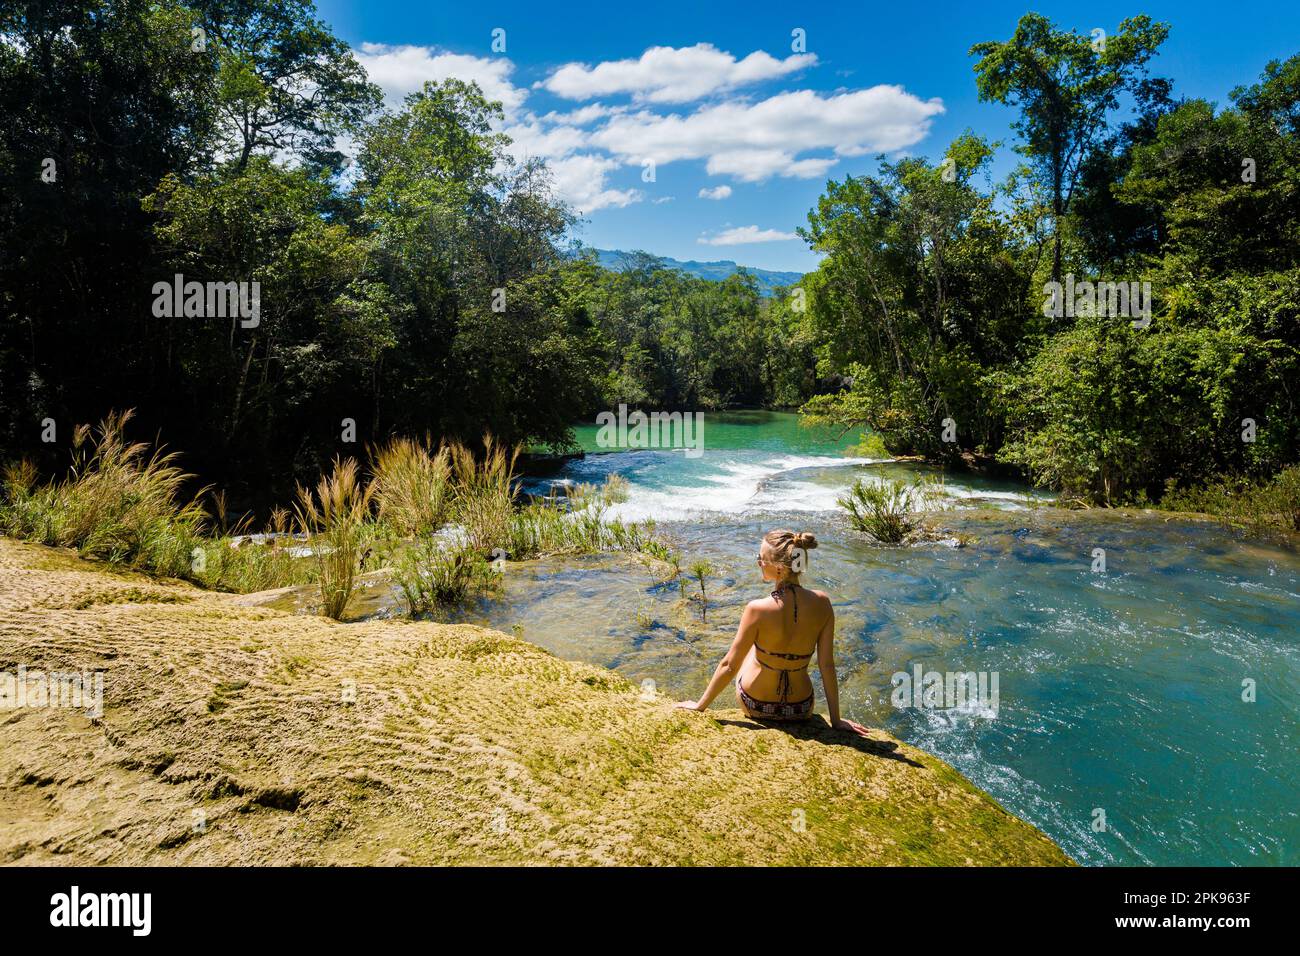 Giovane bella donna che si rilassa in acqua nel parco Roberto Barrios cascadas, Palenque in Messico. Foto di paesaggi vivaci con acque verdi e cristalline lussureggianti Foto Stock